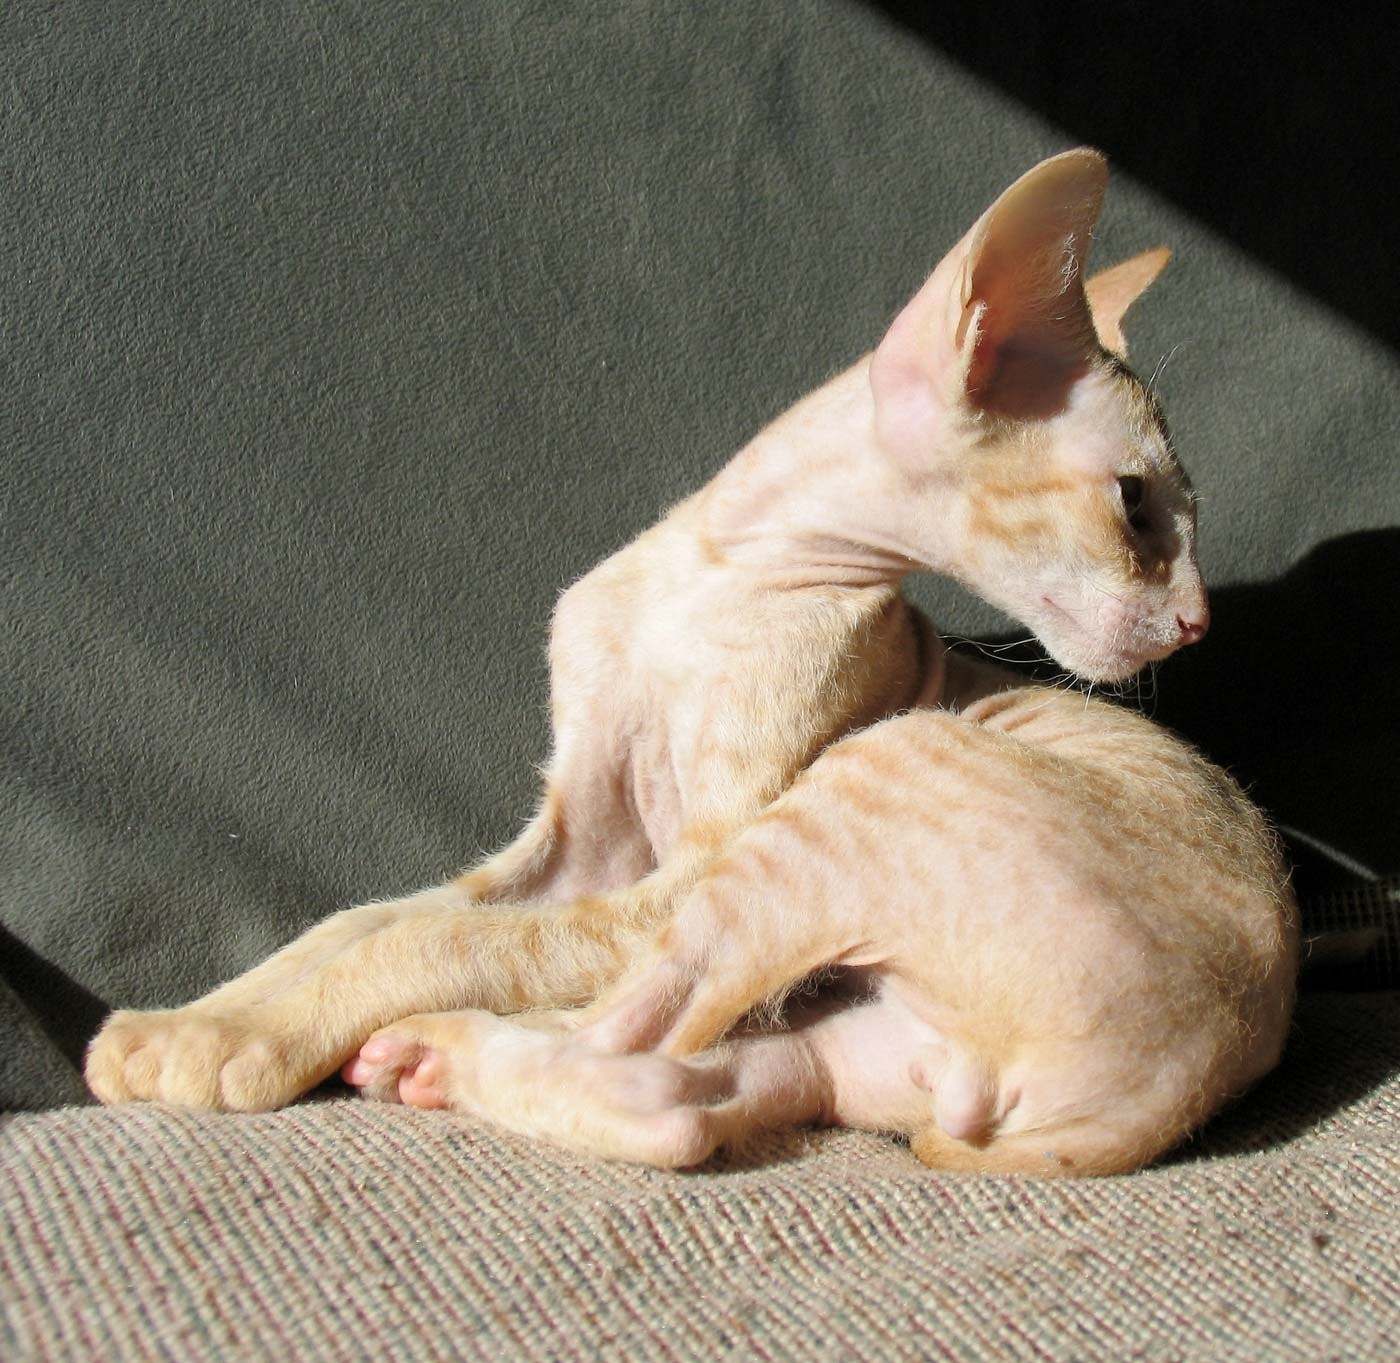 Рассмотрите фотографию кошки породы петерболд. Петерболд сфинкс рыжий. Петерболд кошка. Петерболд Ориентал. Кошки-Балинез, Ориентал, рекс, Петерболд.